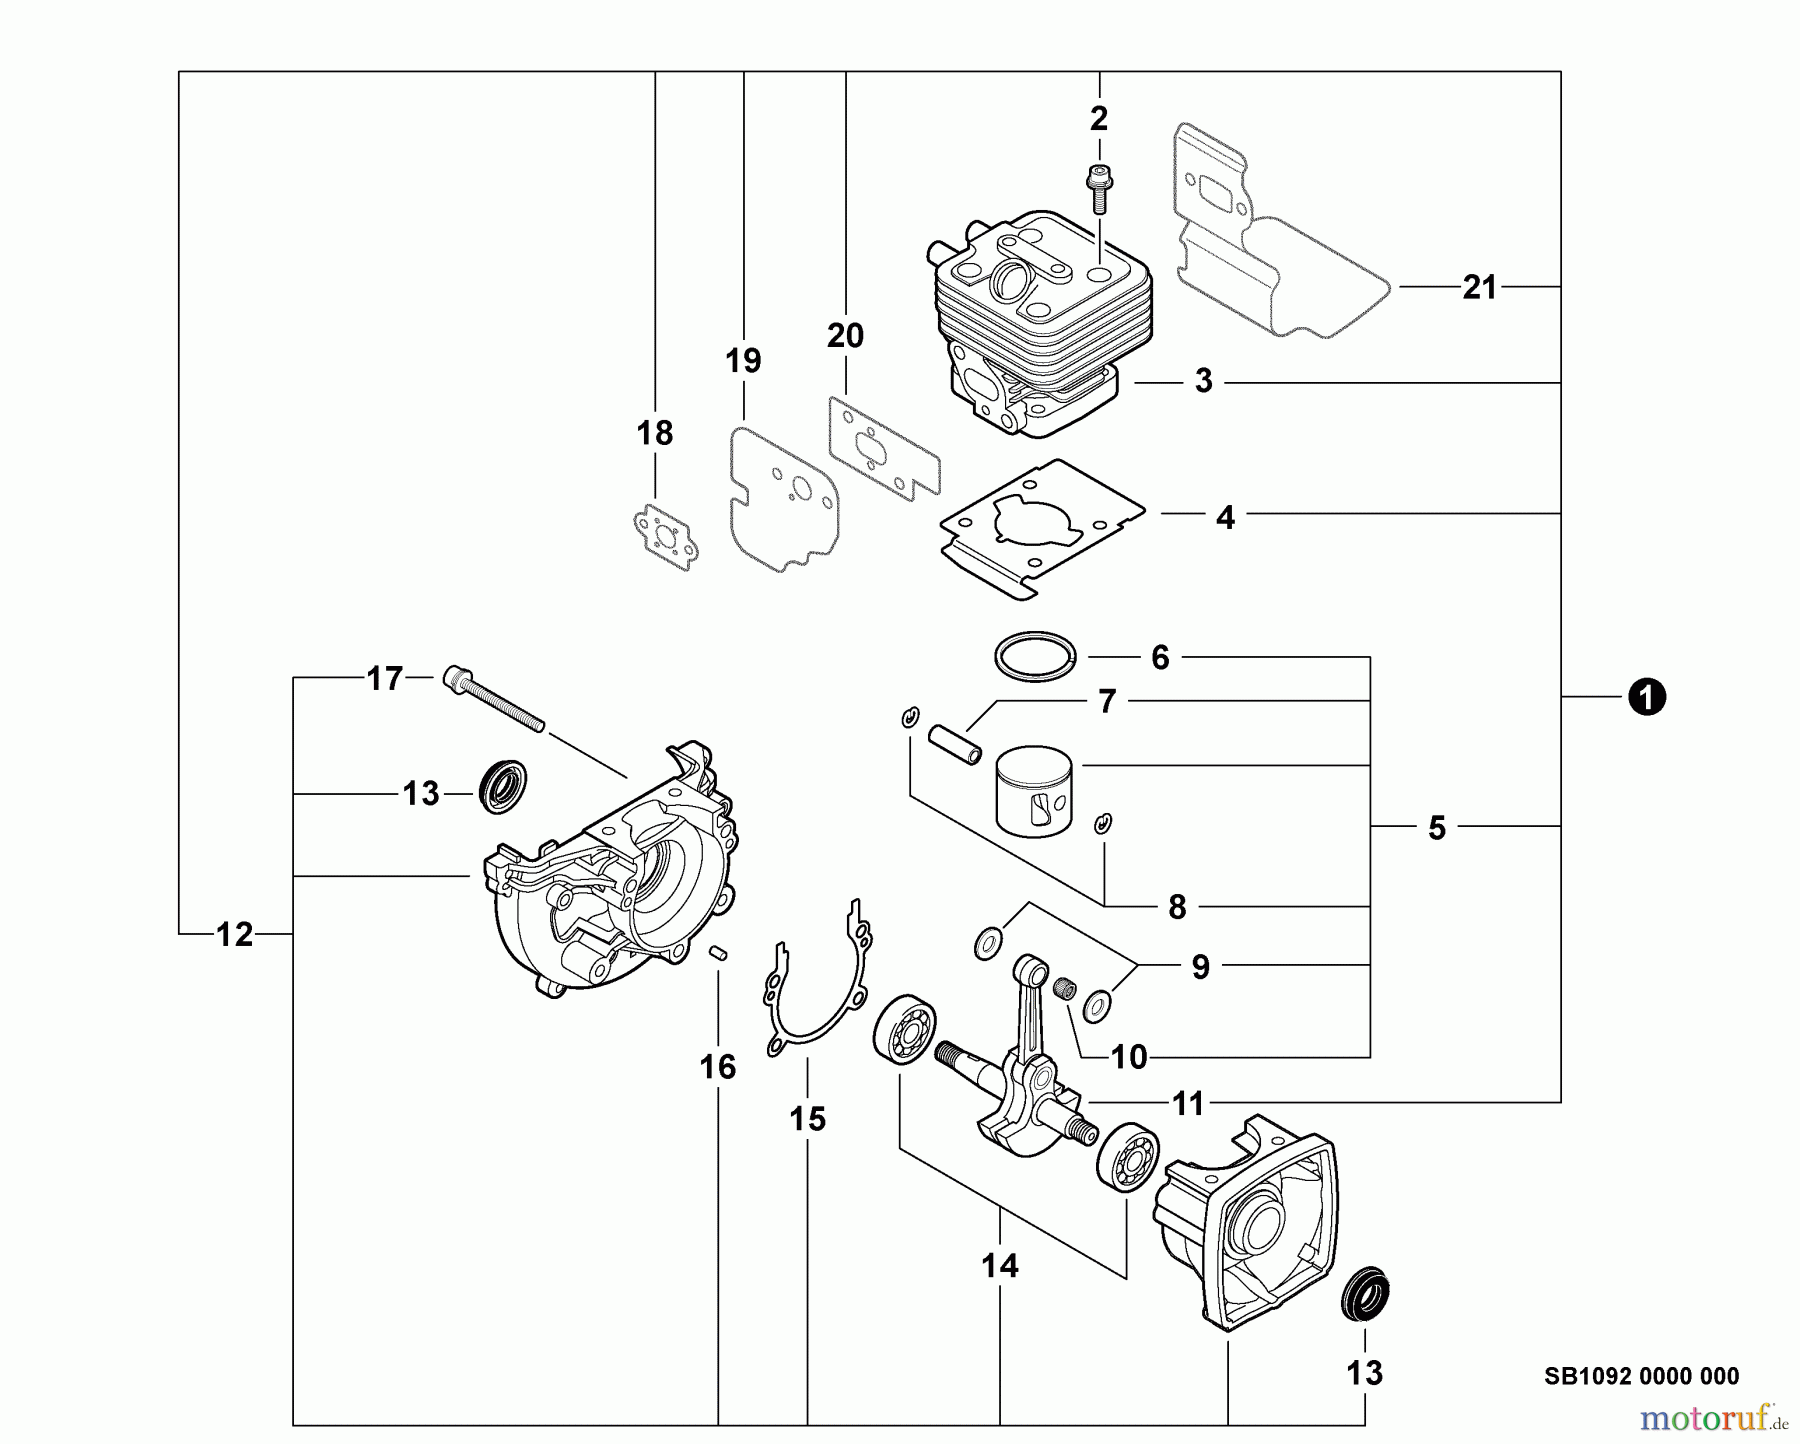  Echo Bläser / Sauger / Häcksler / Mulchgeräte	 PB-255LN - Echo Blower/Vacuums, S/N: P35111001001 - P35111999999 Engine, Short Block -- SB1092